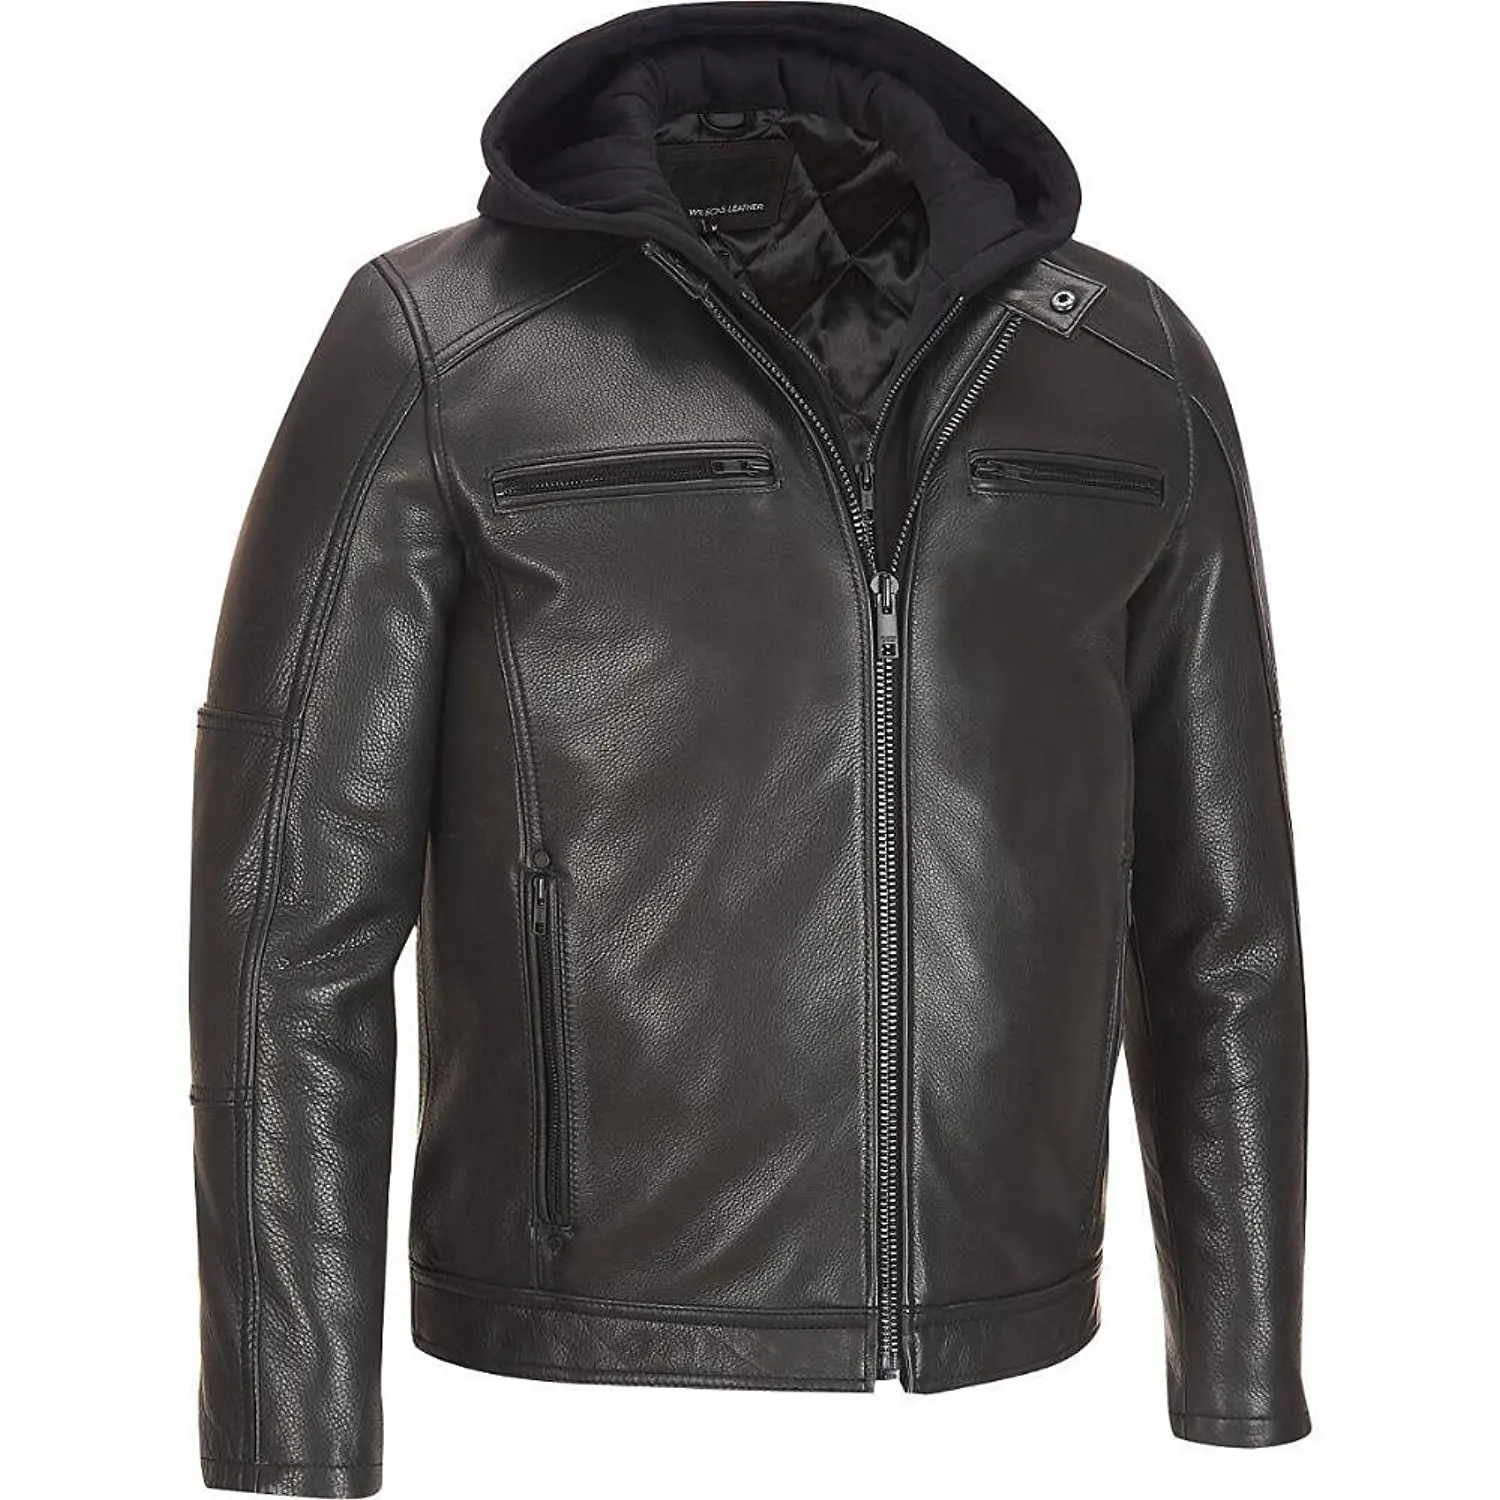 Мужские куртки цена москва. Кожаная куртка Leather Air Jacket 38118. Алеф кожаные куртки мужские. Куртка Radloff 1927 кожаная мужская. Wilsons Leather куртка.